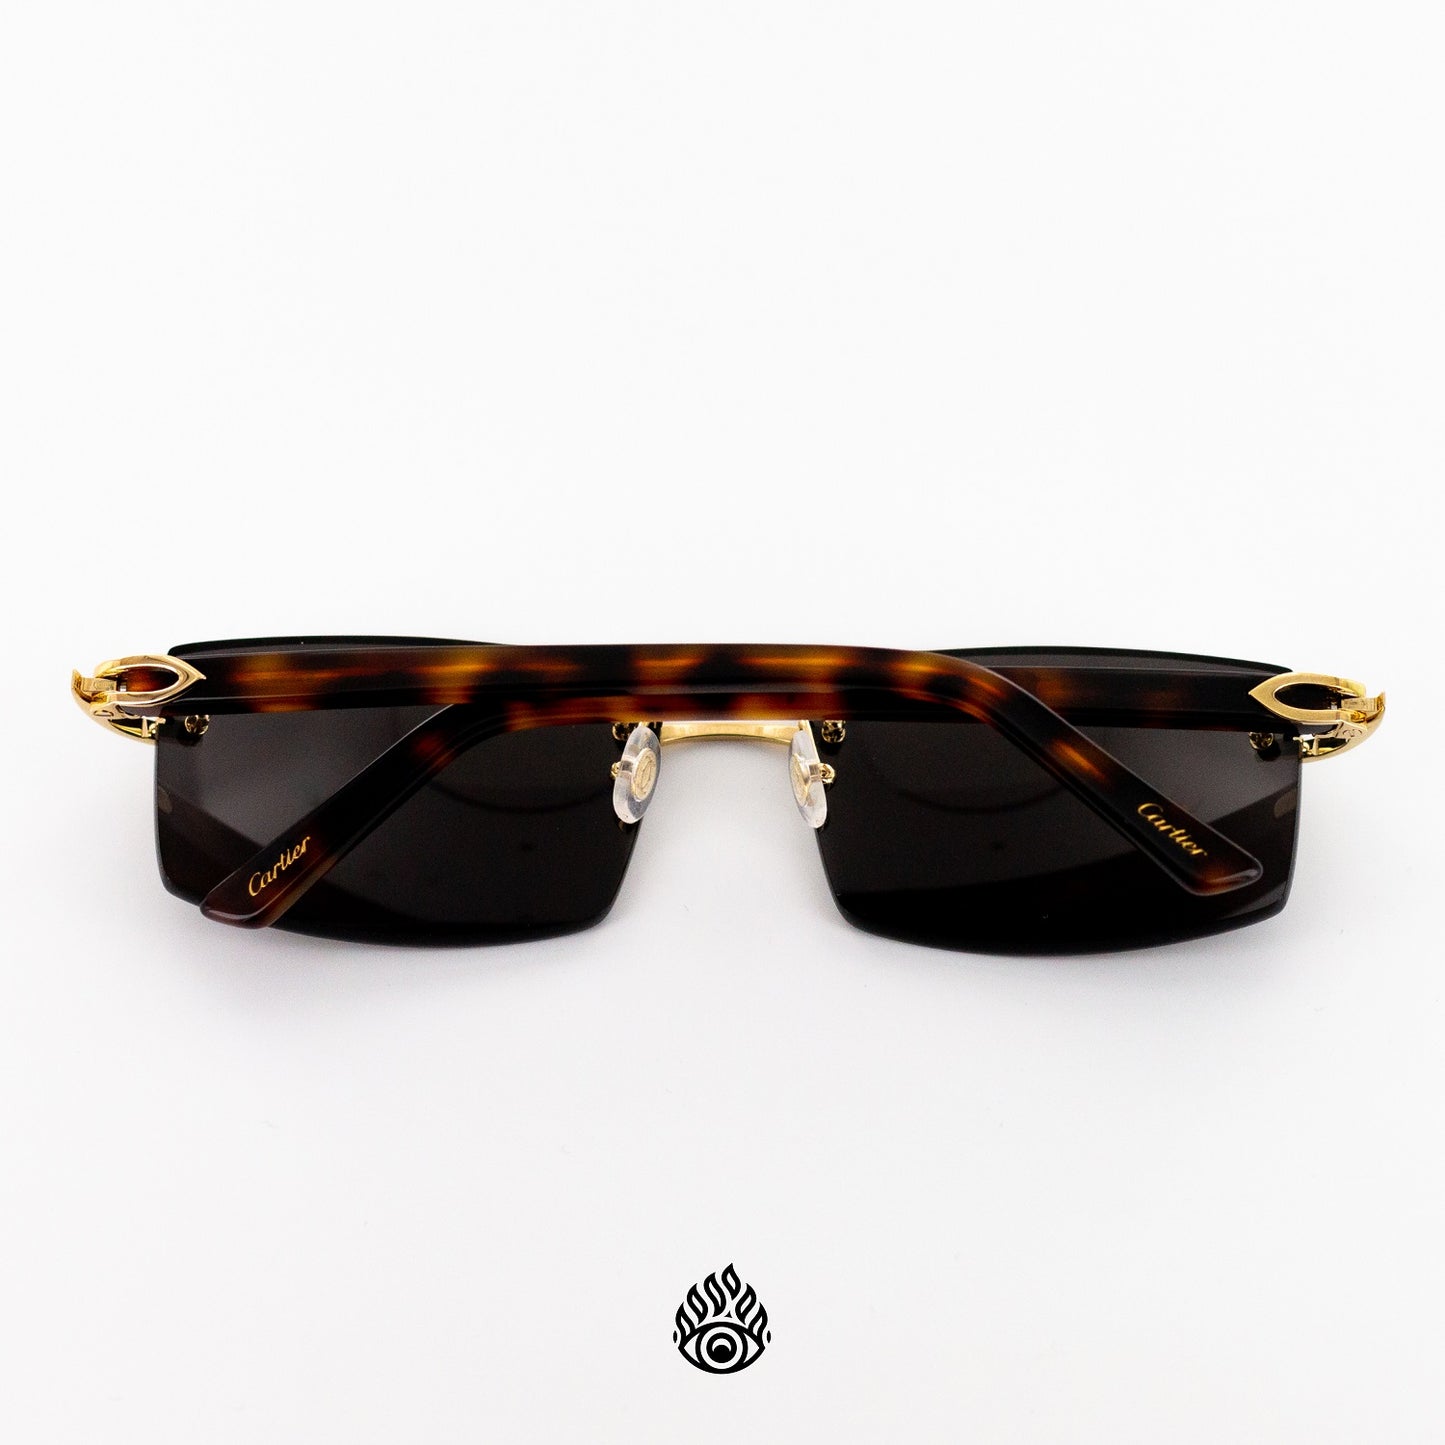 Cartier Tortoise Acetate Glasses with Gold C Decor & Blackout Lens